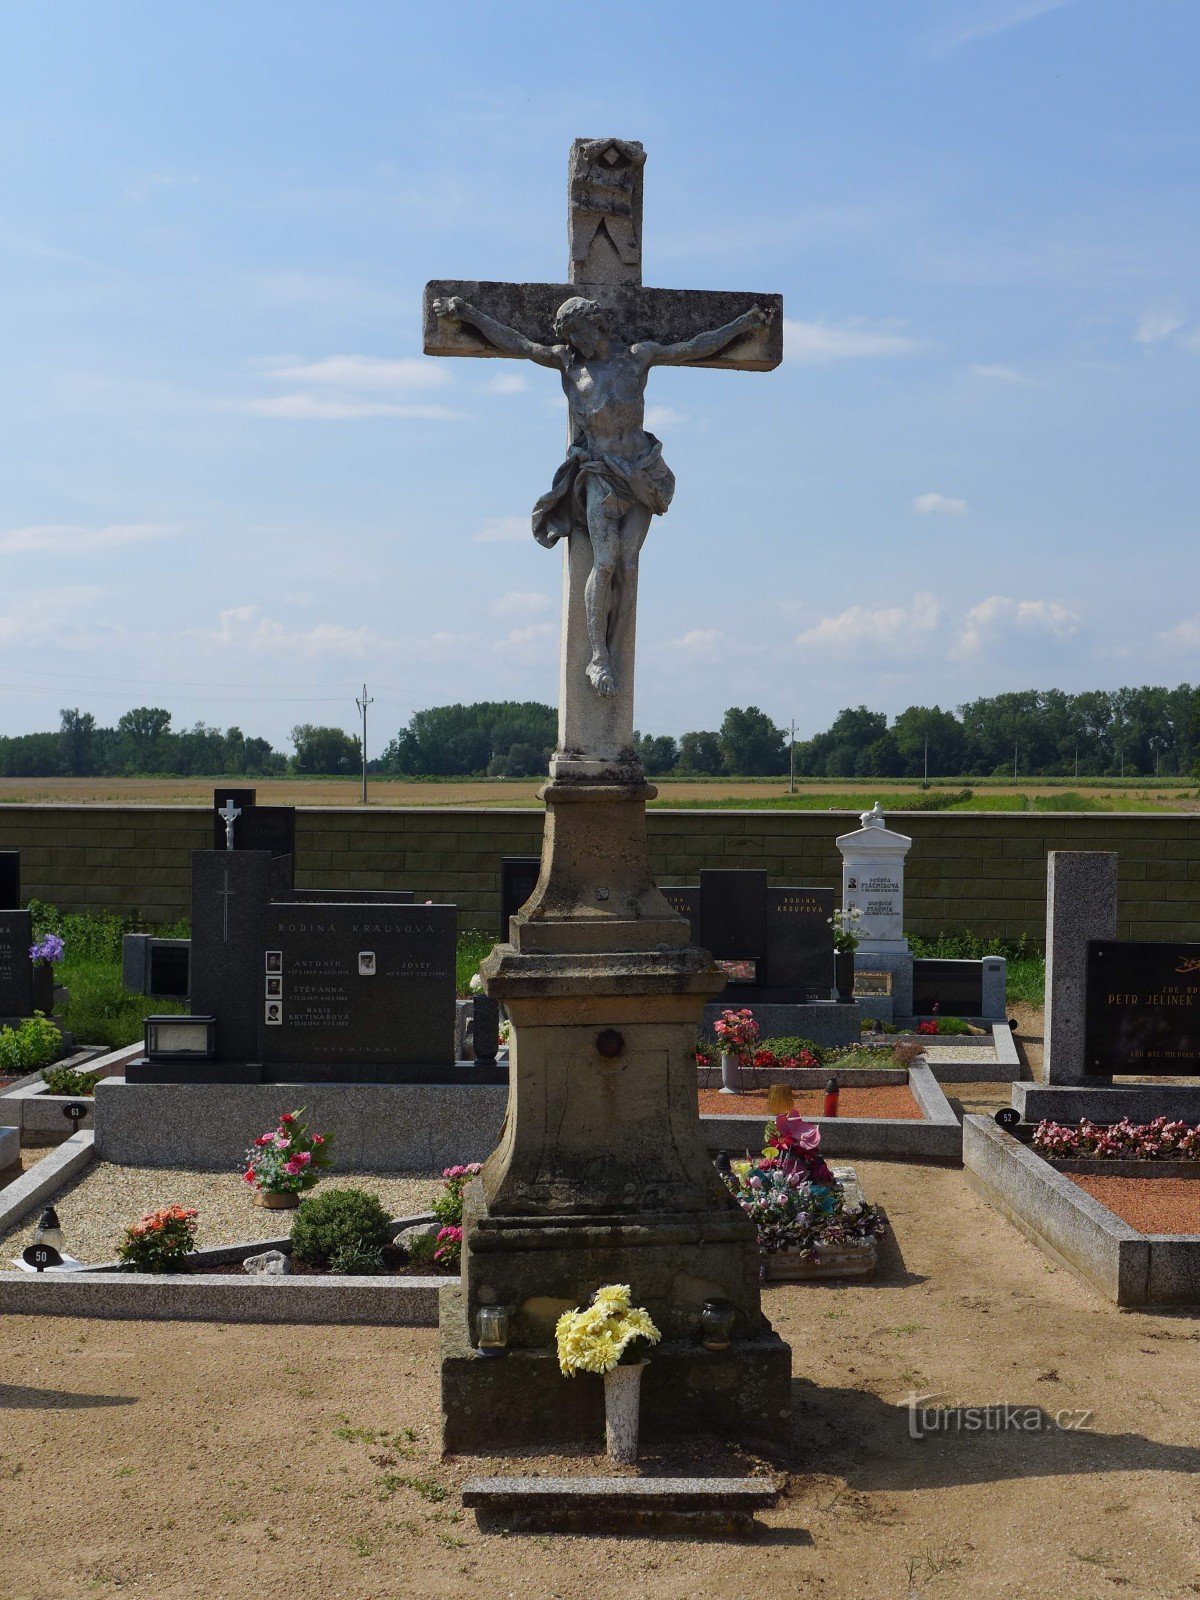 Nemčičky - central cross in the cemetery